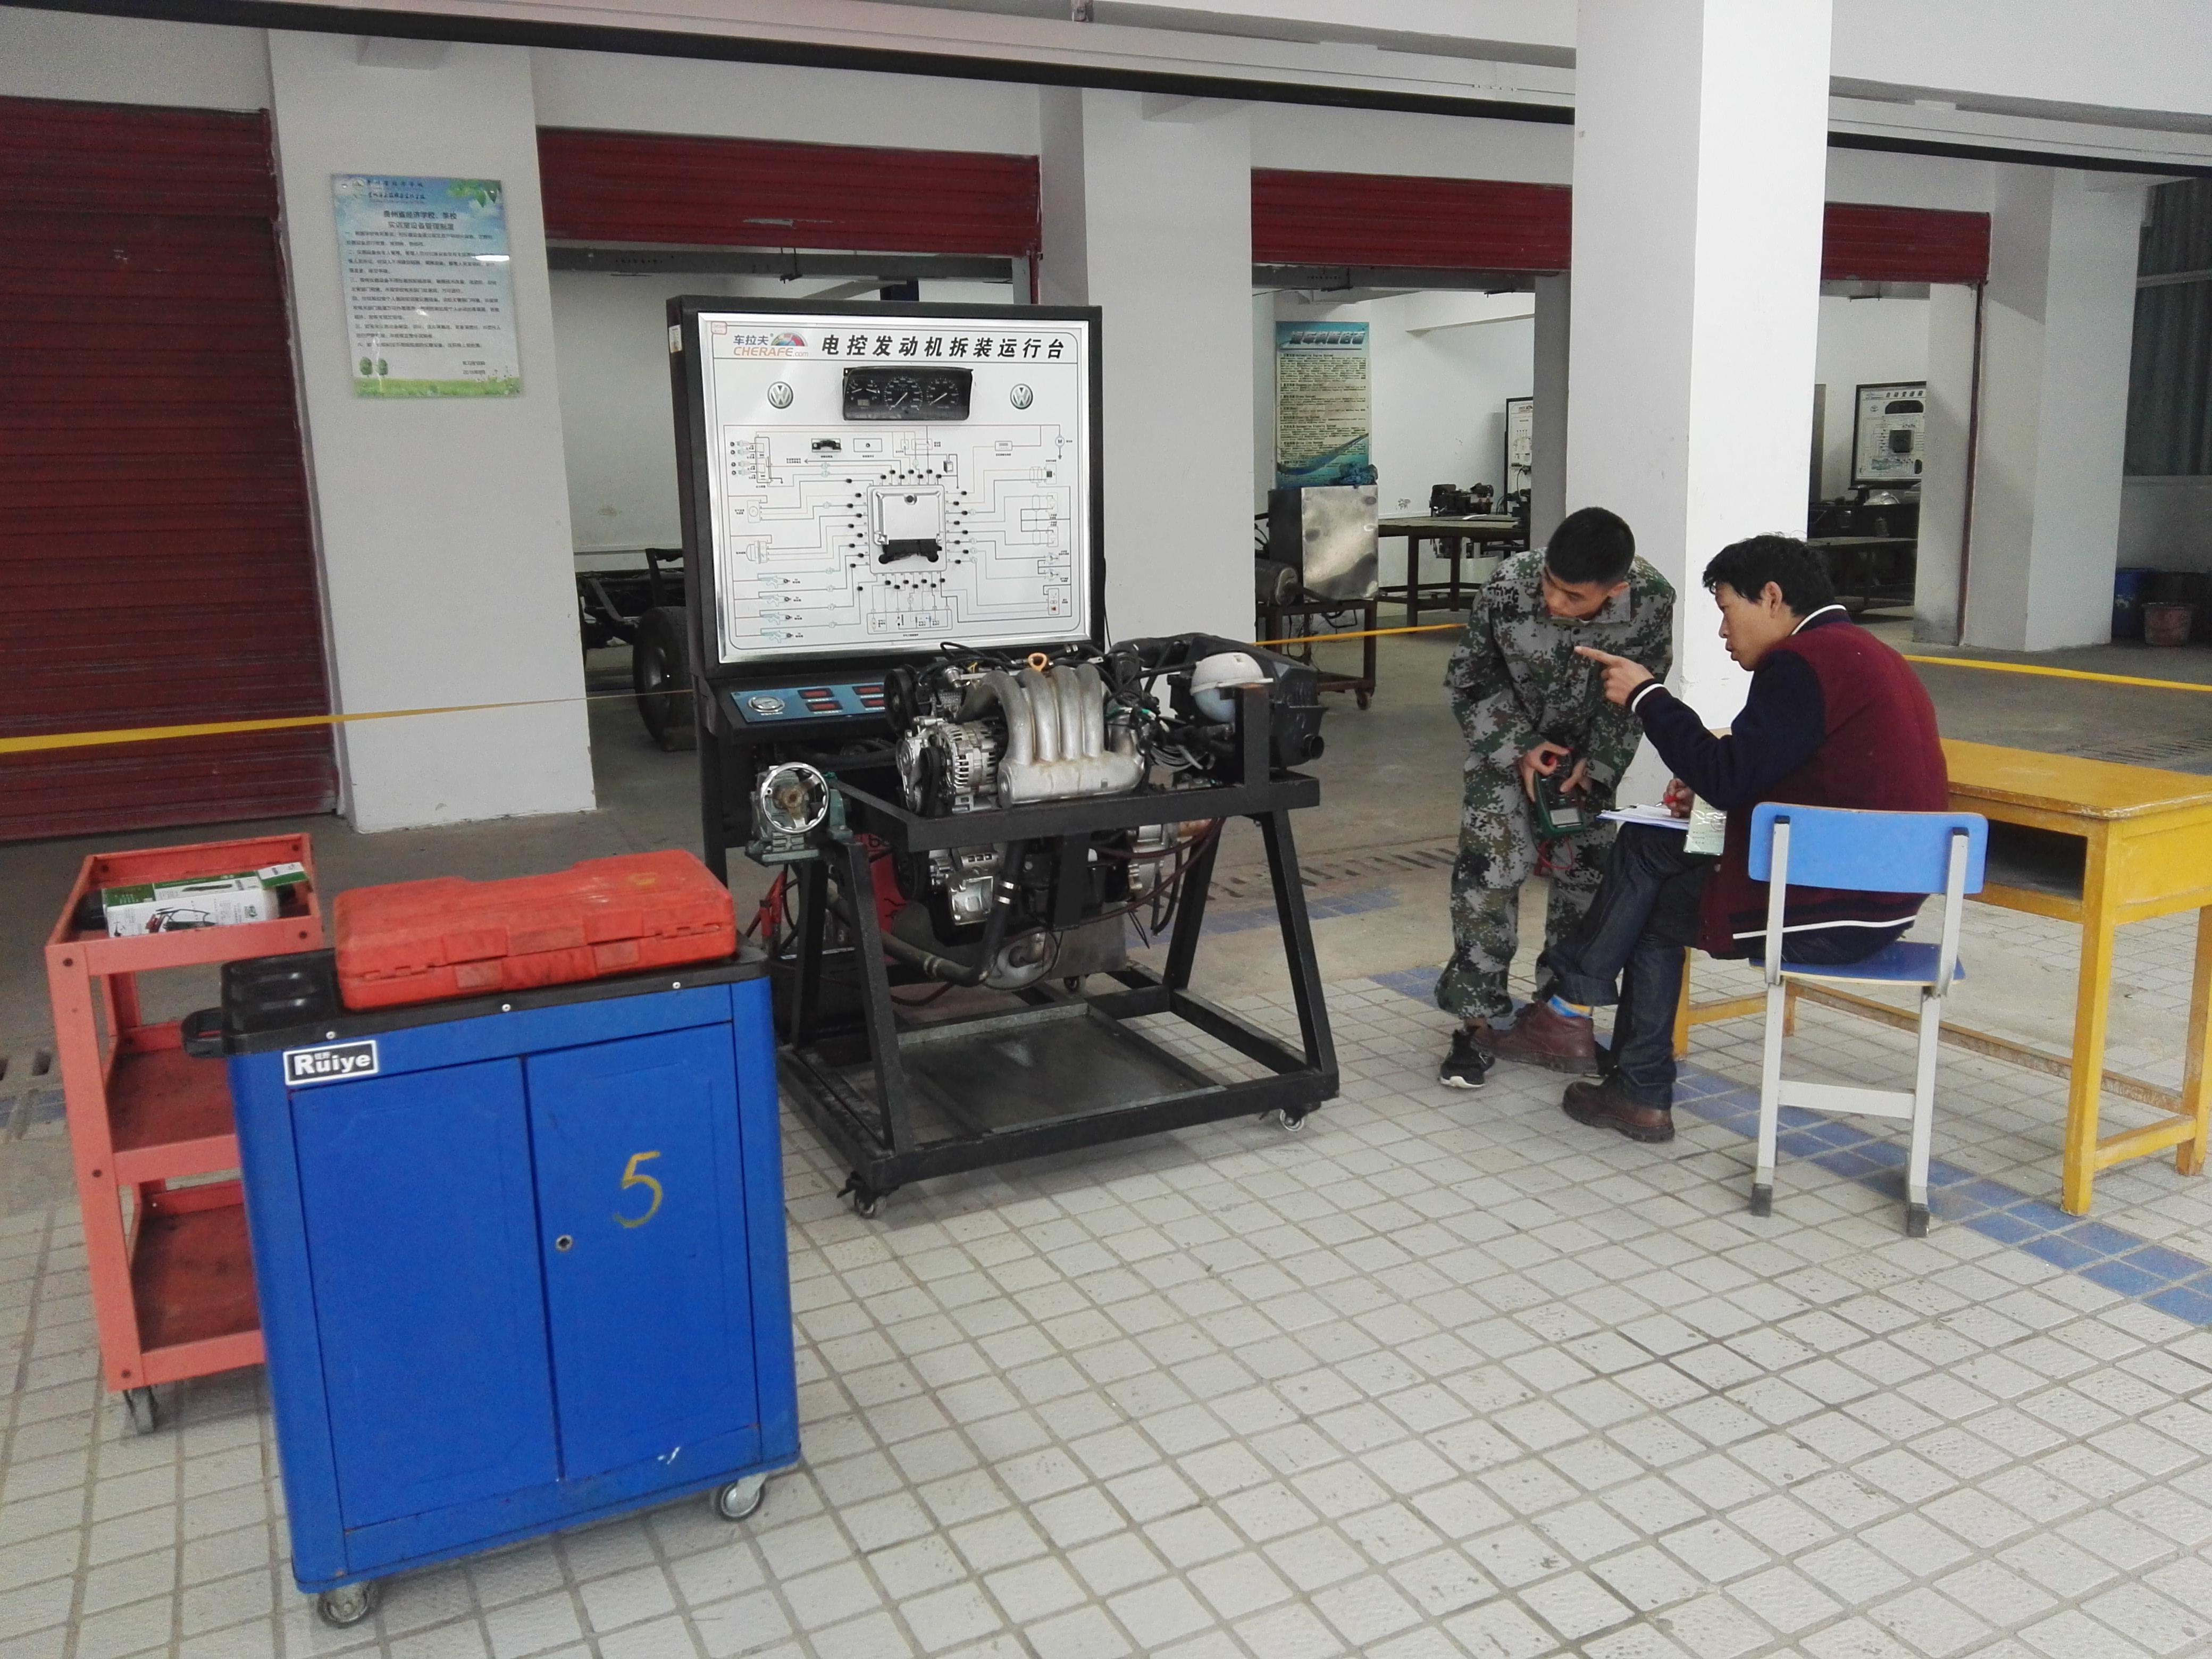 太阳成集团tyc33455cc(贵阳校区)机电工程系 汽车电子与电气实训室简介